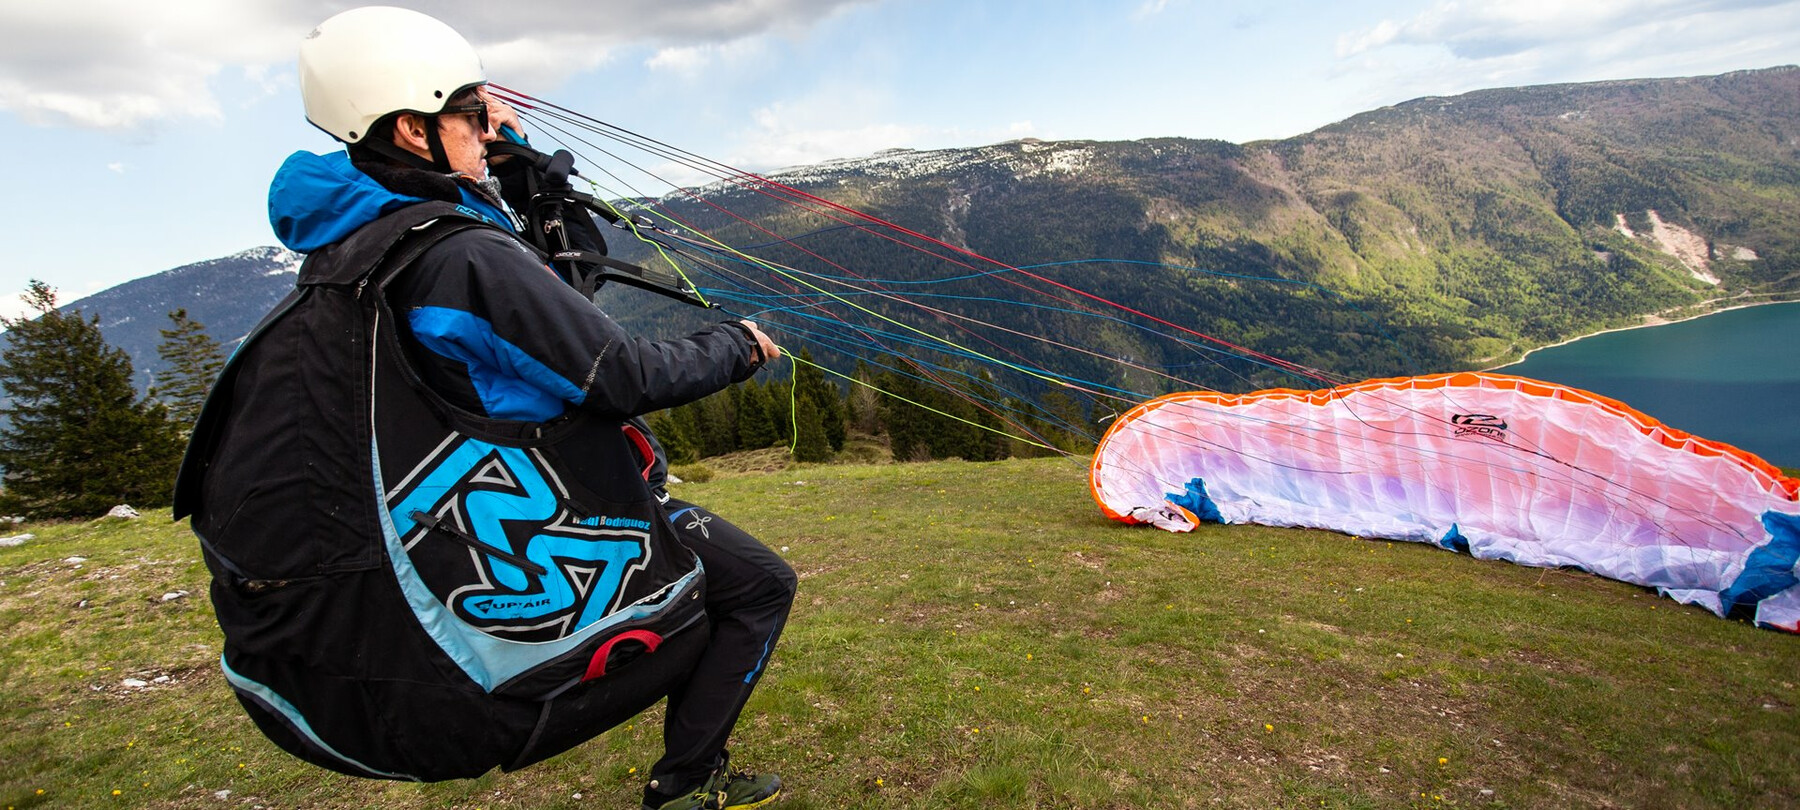 De meren van Trentino: het verhaal van Nicola Donini, paragliderpiloot